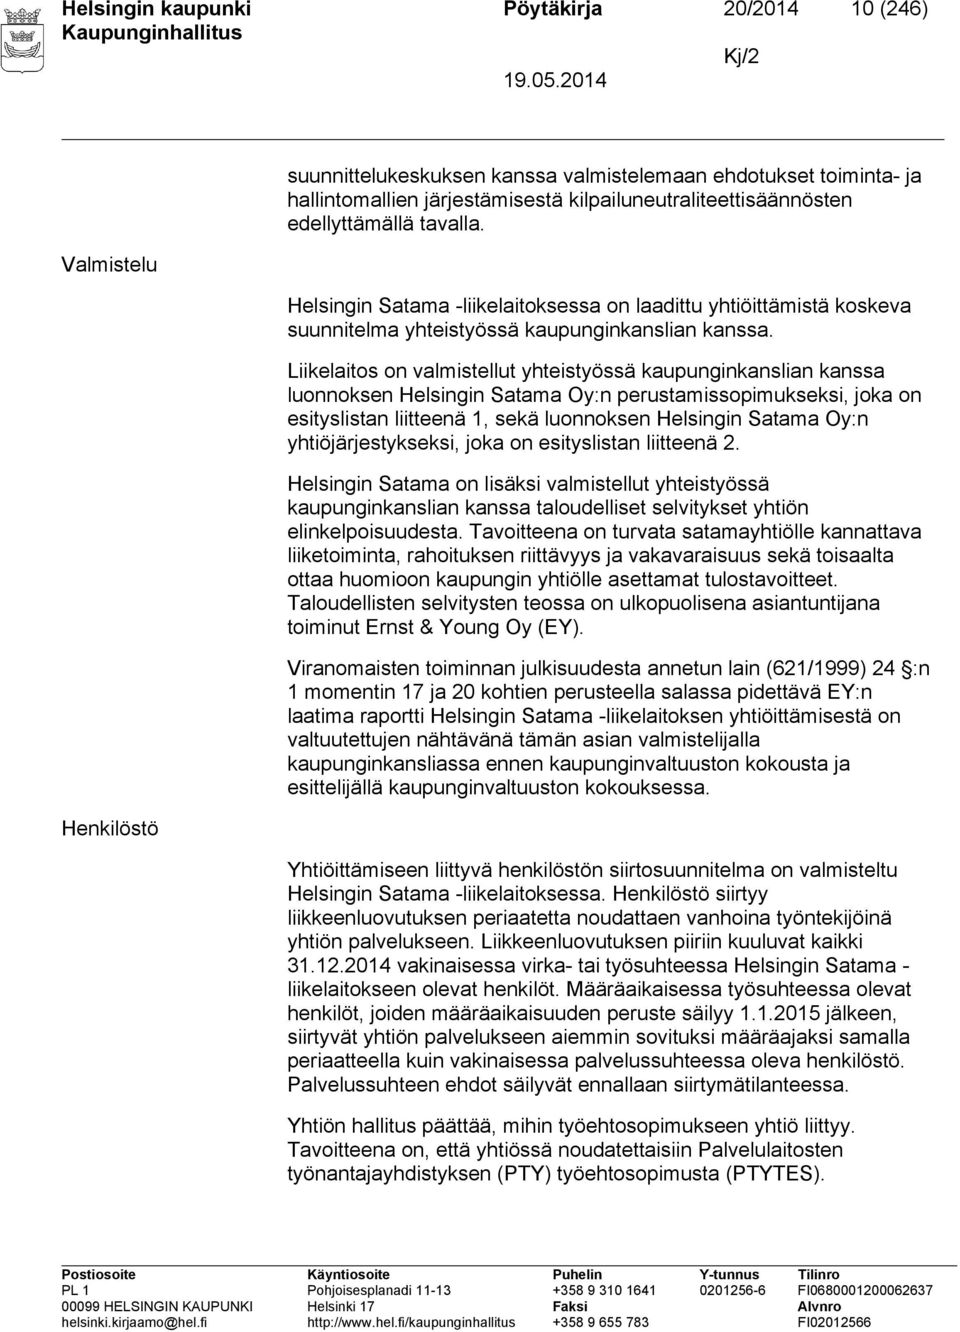 Liikelaitos on valmistellut yhteistyössä kaupunginkanslian kanssa luonnoksen Helsingin Satama Oy:n perustamissopimukseksi, joka on esityslistan liitteenä 1, sekä luonnoksen Helsingin Satama Oy:n